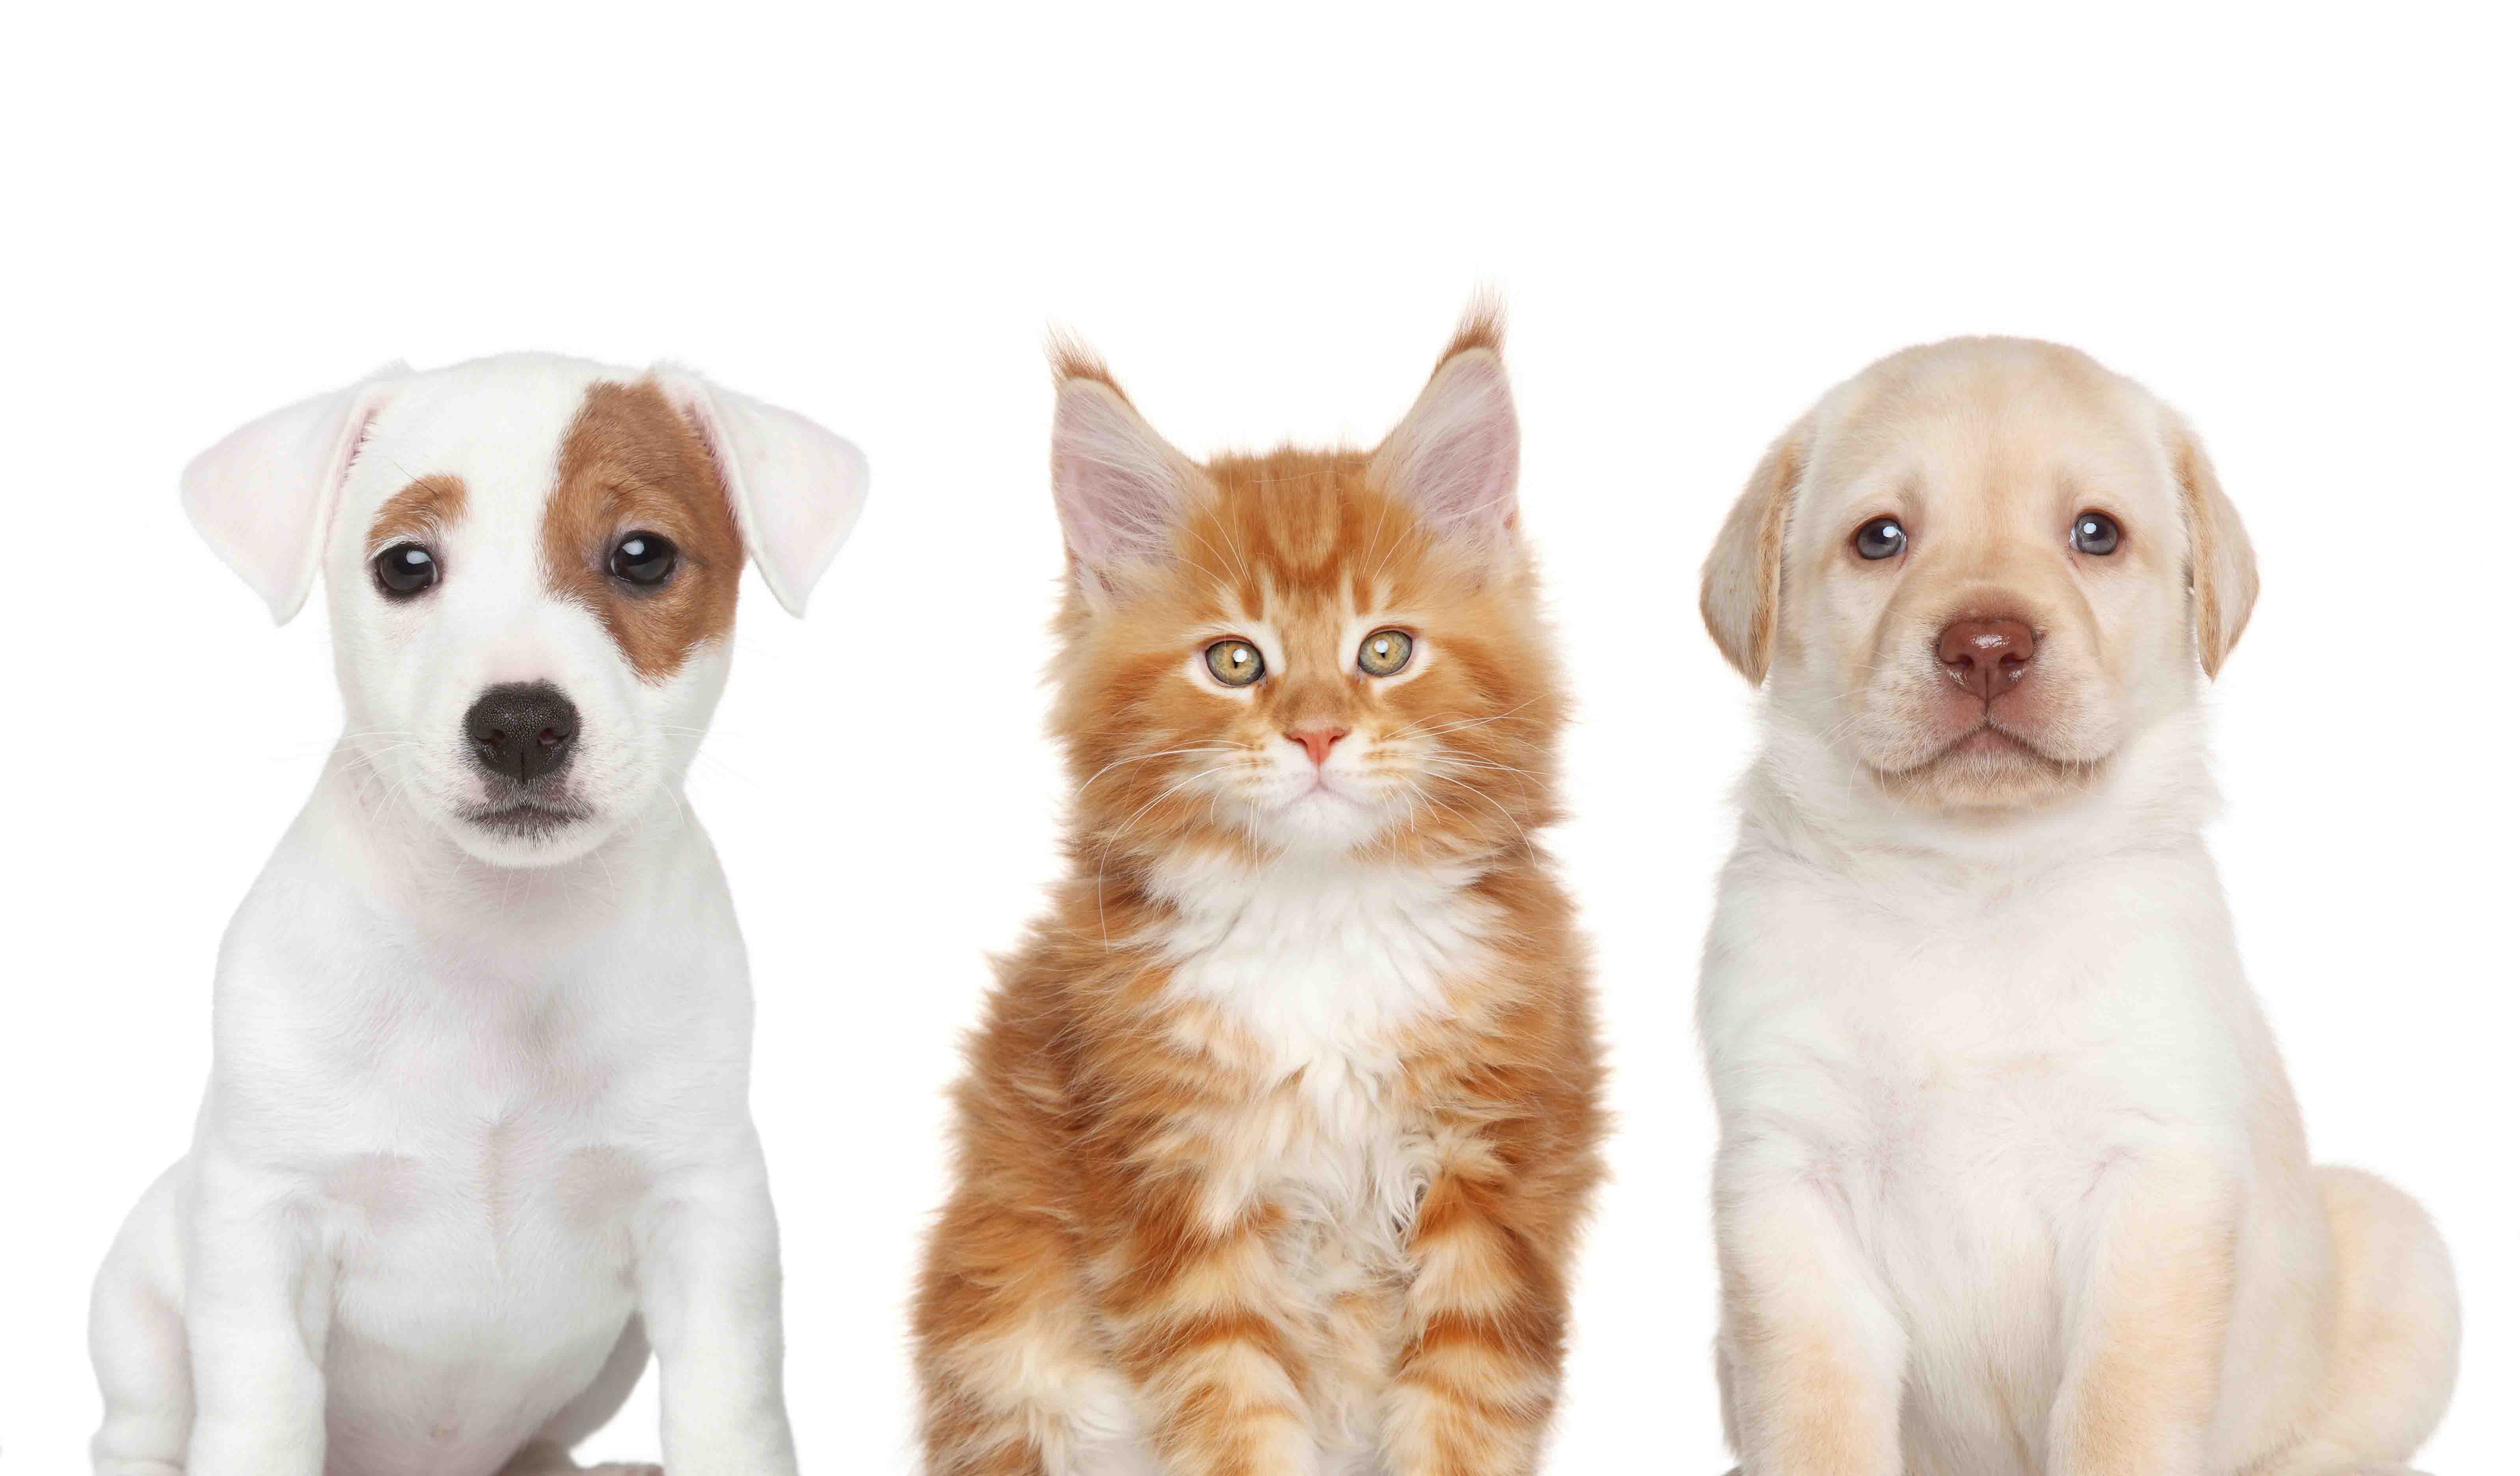 La asociación civil Voluntarios por los Animales busca sensibilizar a los dueños a querer más a los animales domesticos